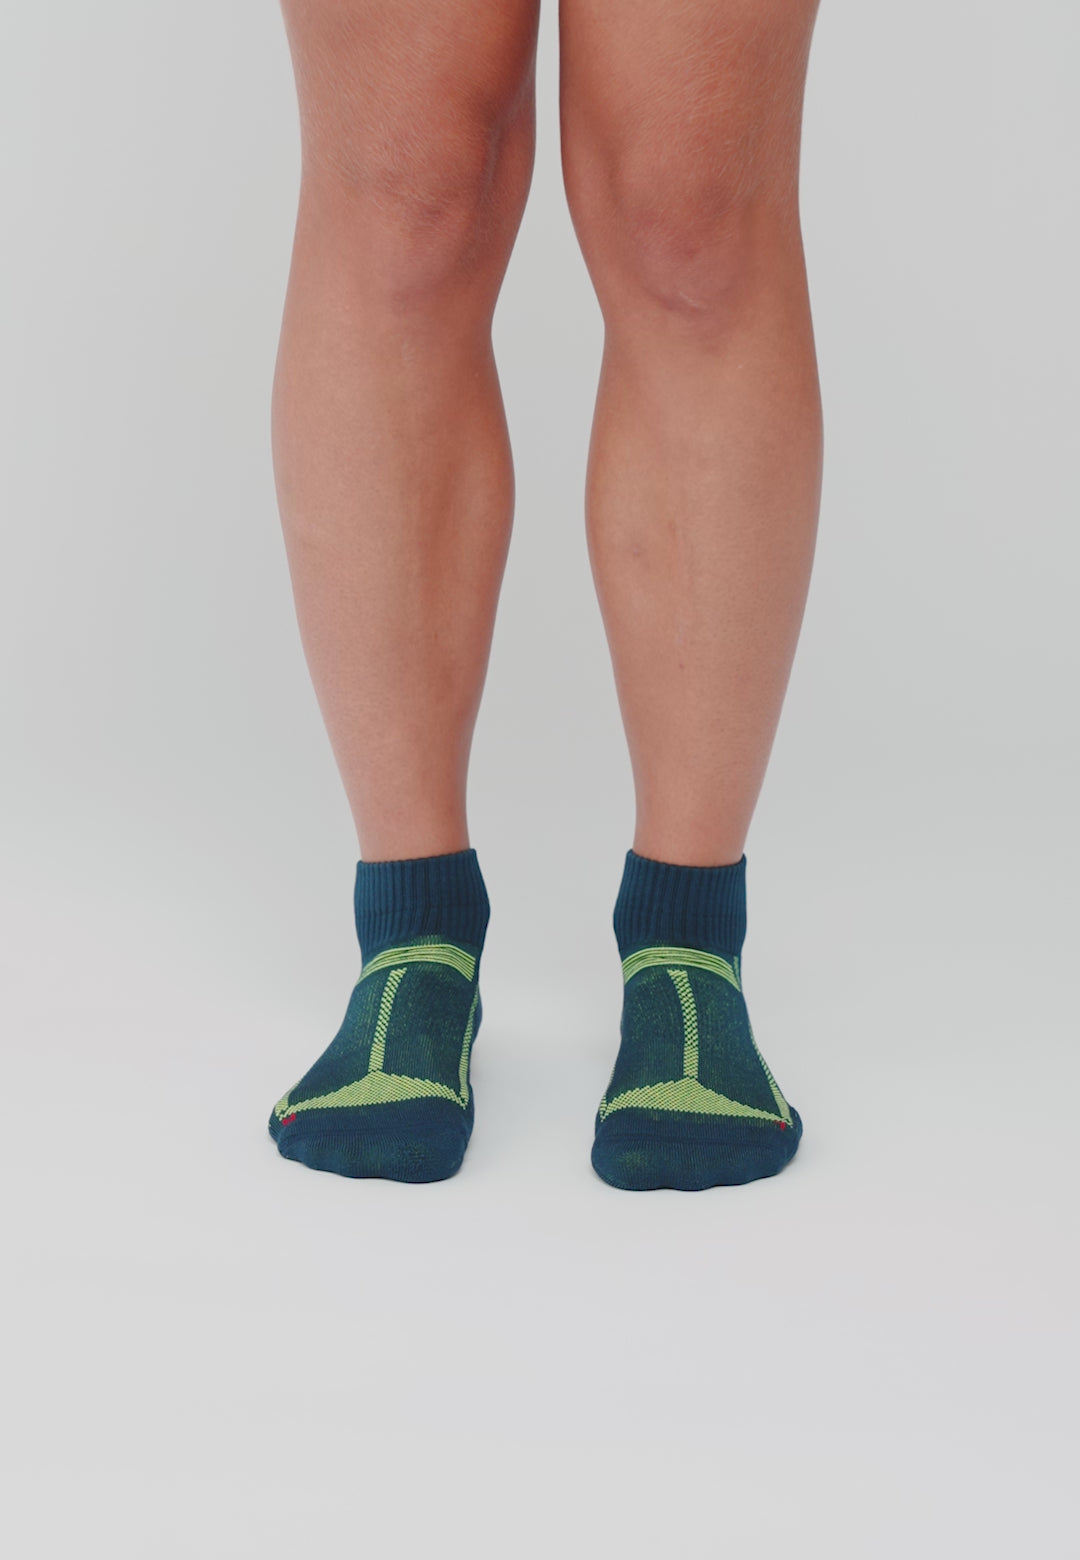 Sports Running Socks Danish Endurance Size UK 9 - 12 3 Pack Anti Blister